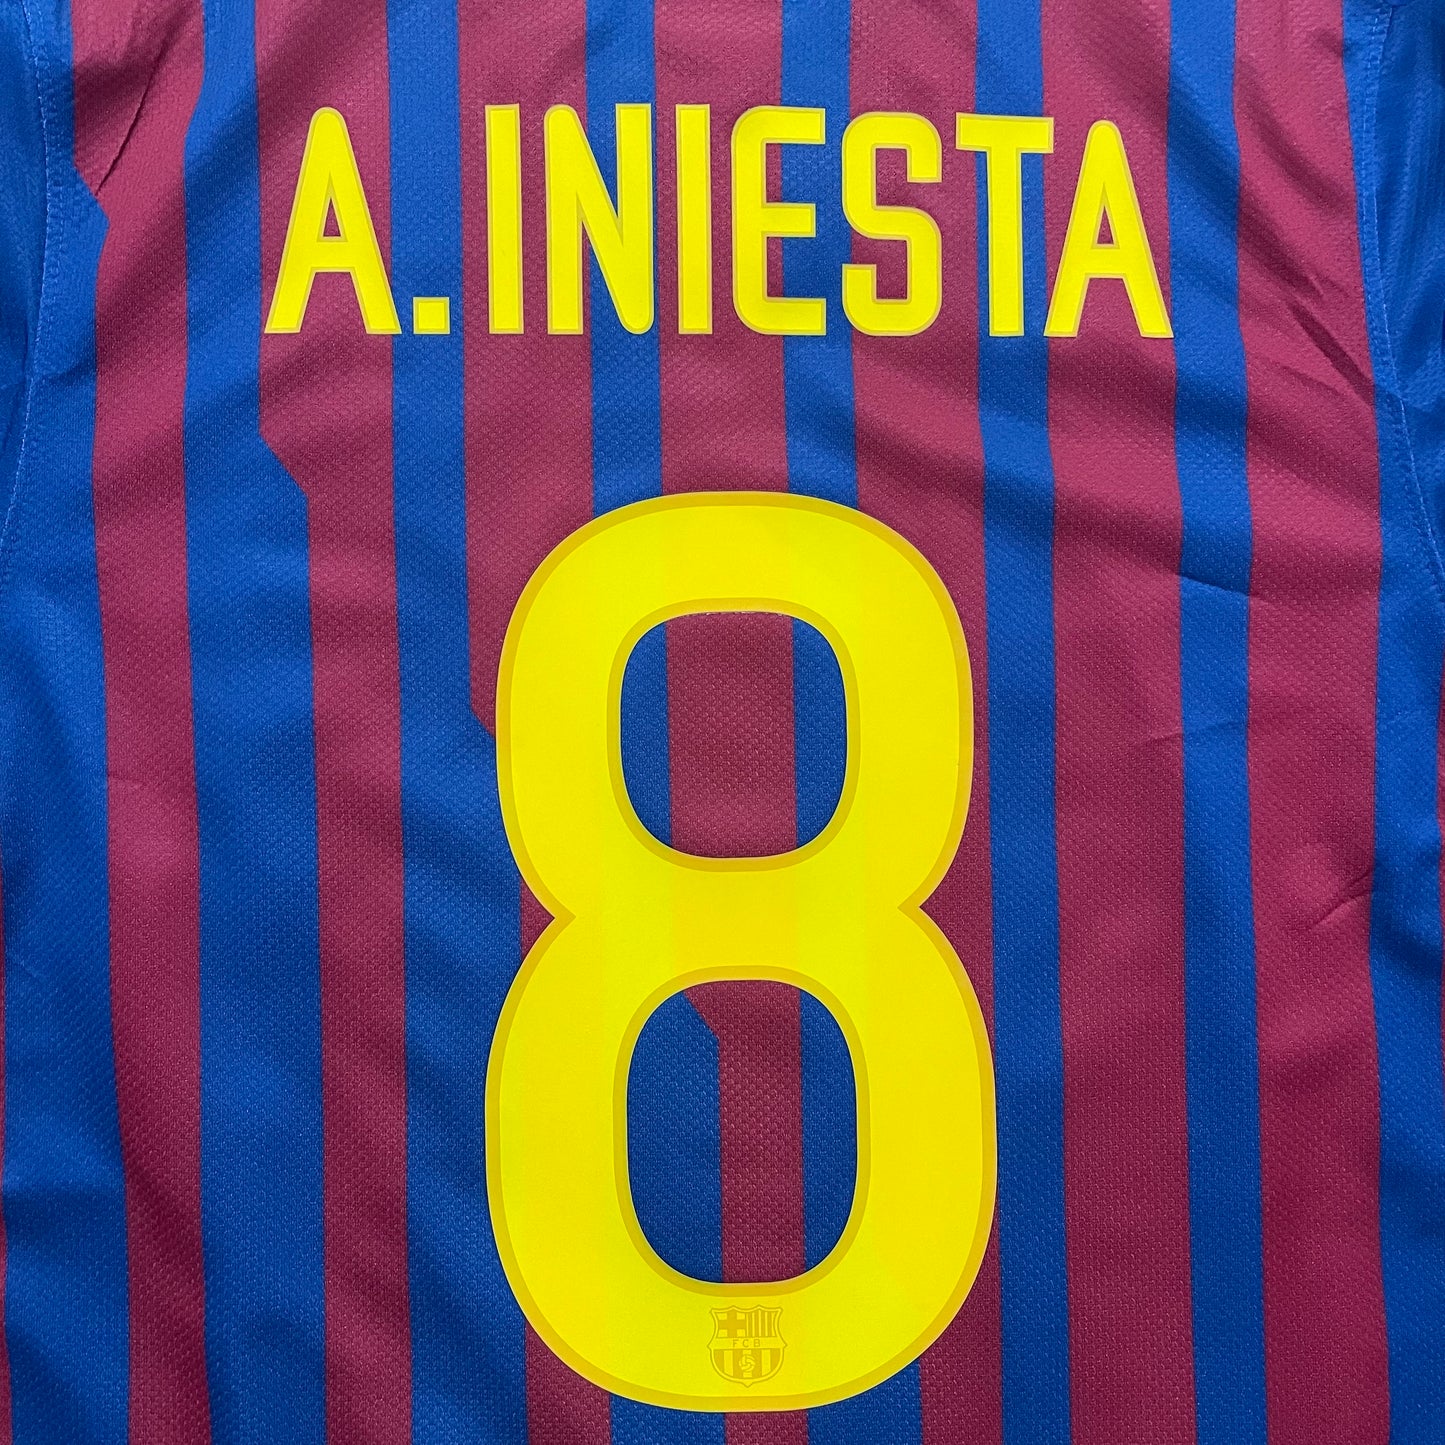 <tc>2011-2012 FC Barcelona Player Issue camiseta local #8 Iniesta (M)</tc>